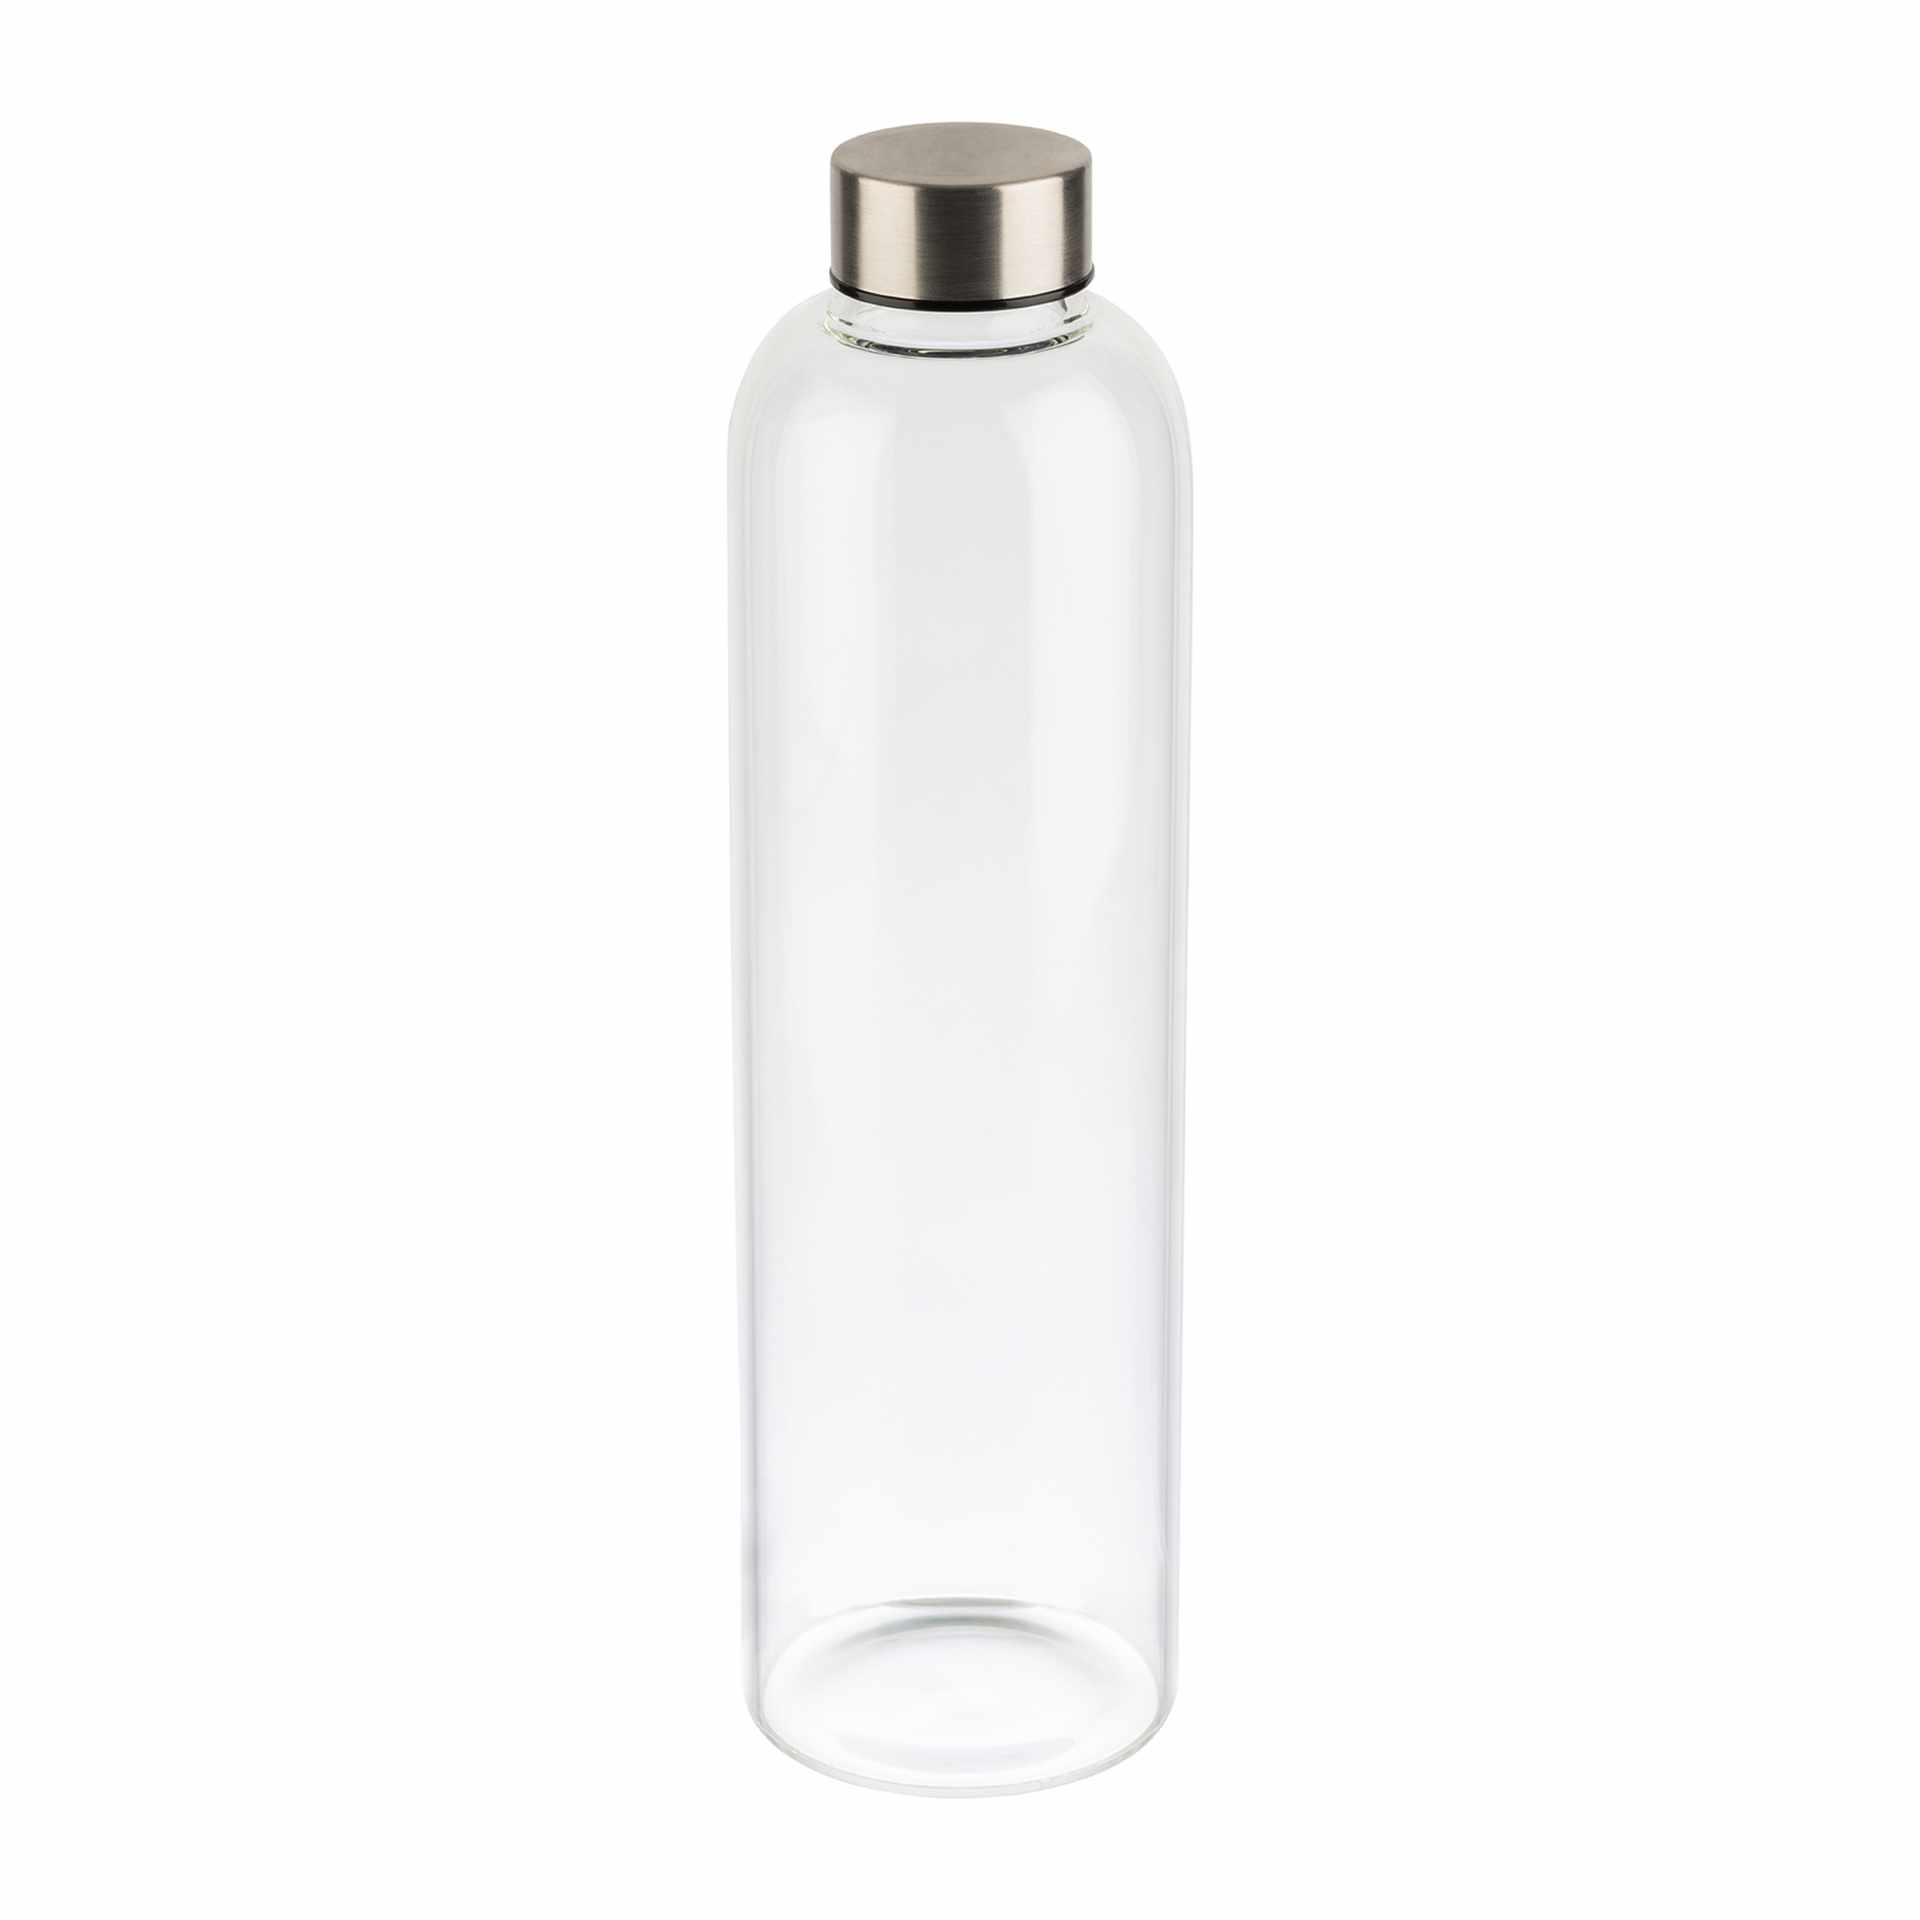 Trinkflasche - mit Schraubverschluss - Höhe 28,5 cm - Ø 7,5 cm - Inhalt 1,0 l - Glas - 66909-B